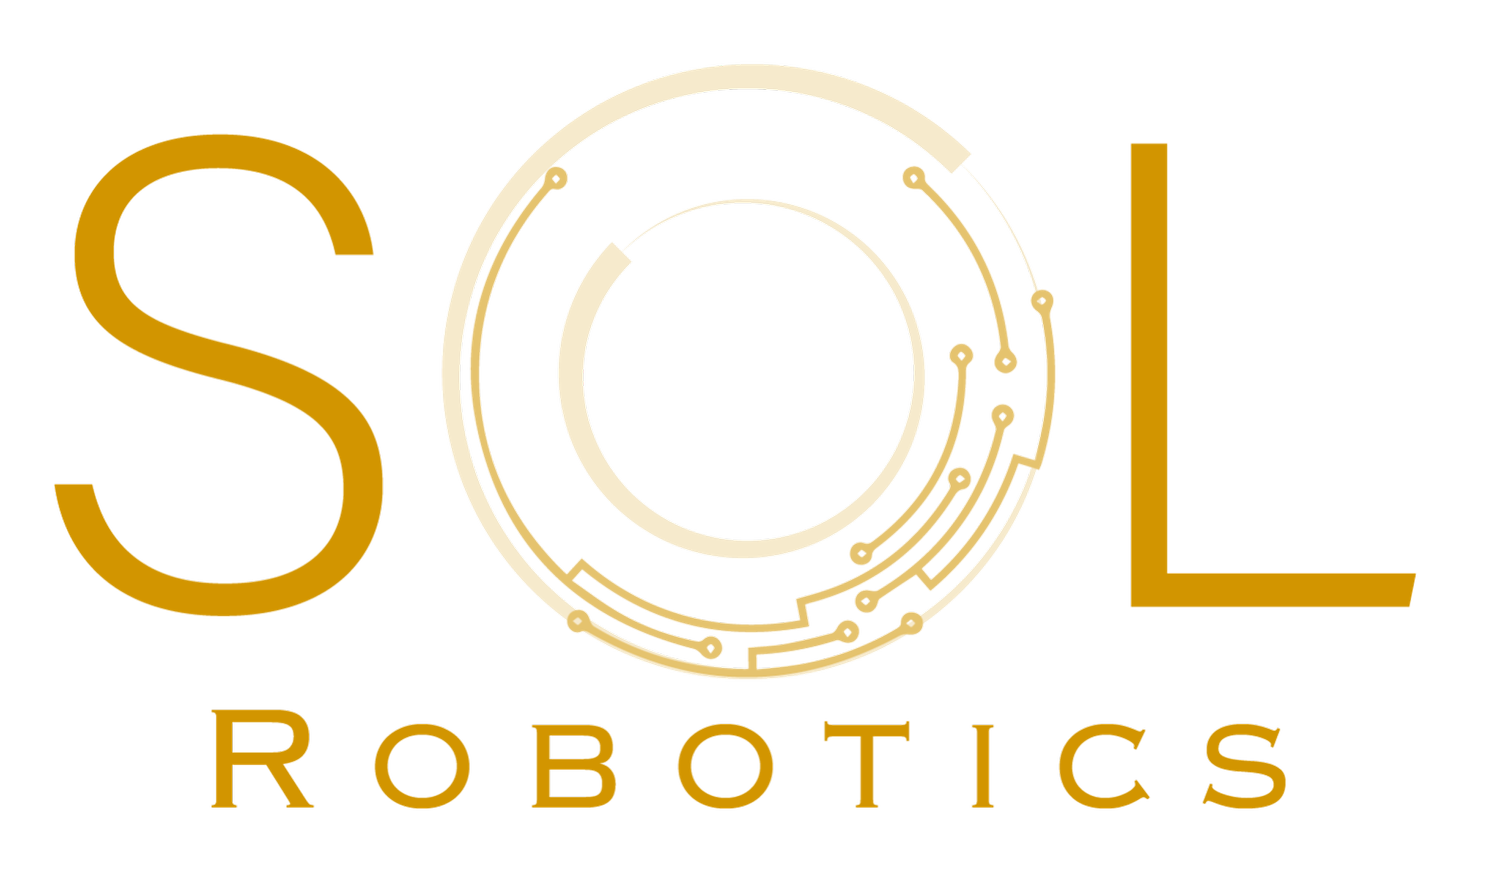 Sol Robotics - Adaptable Robots